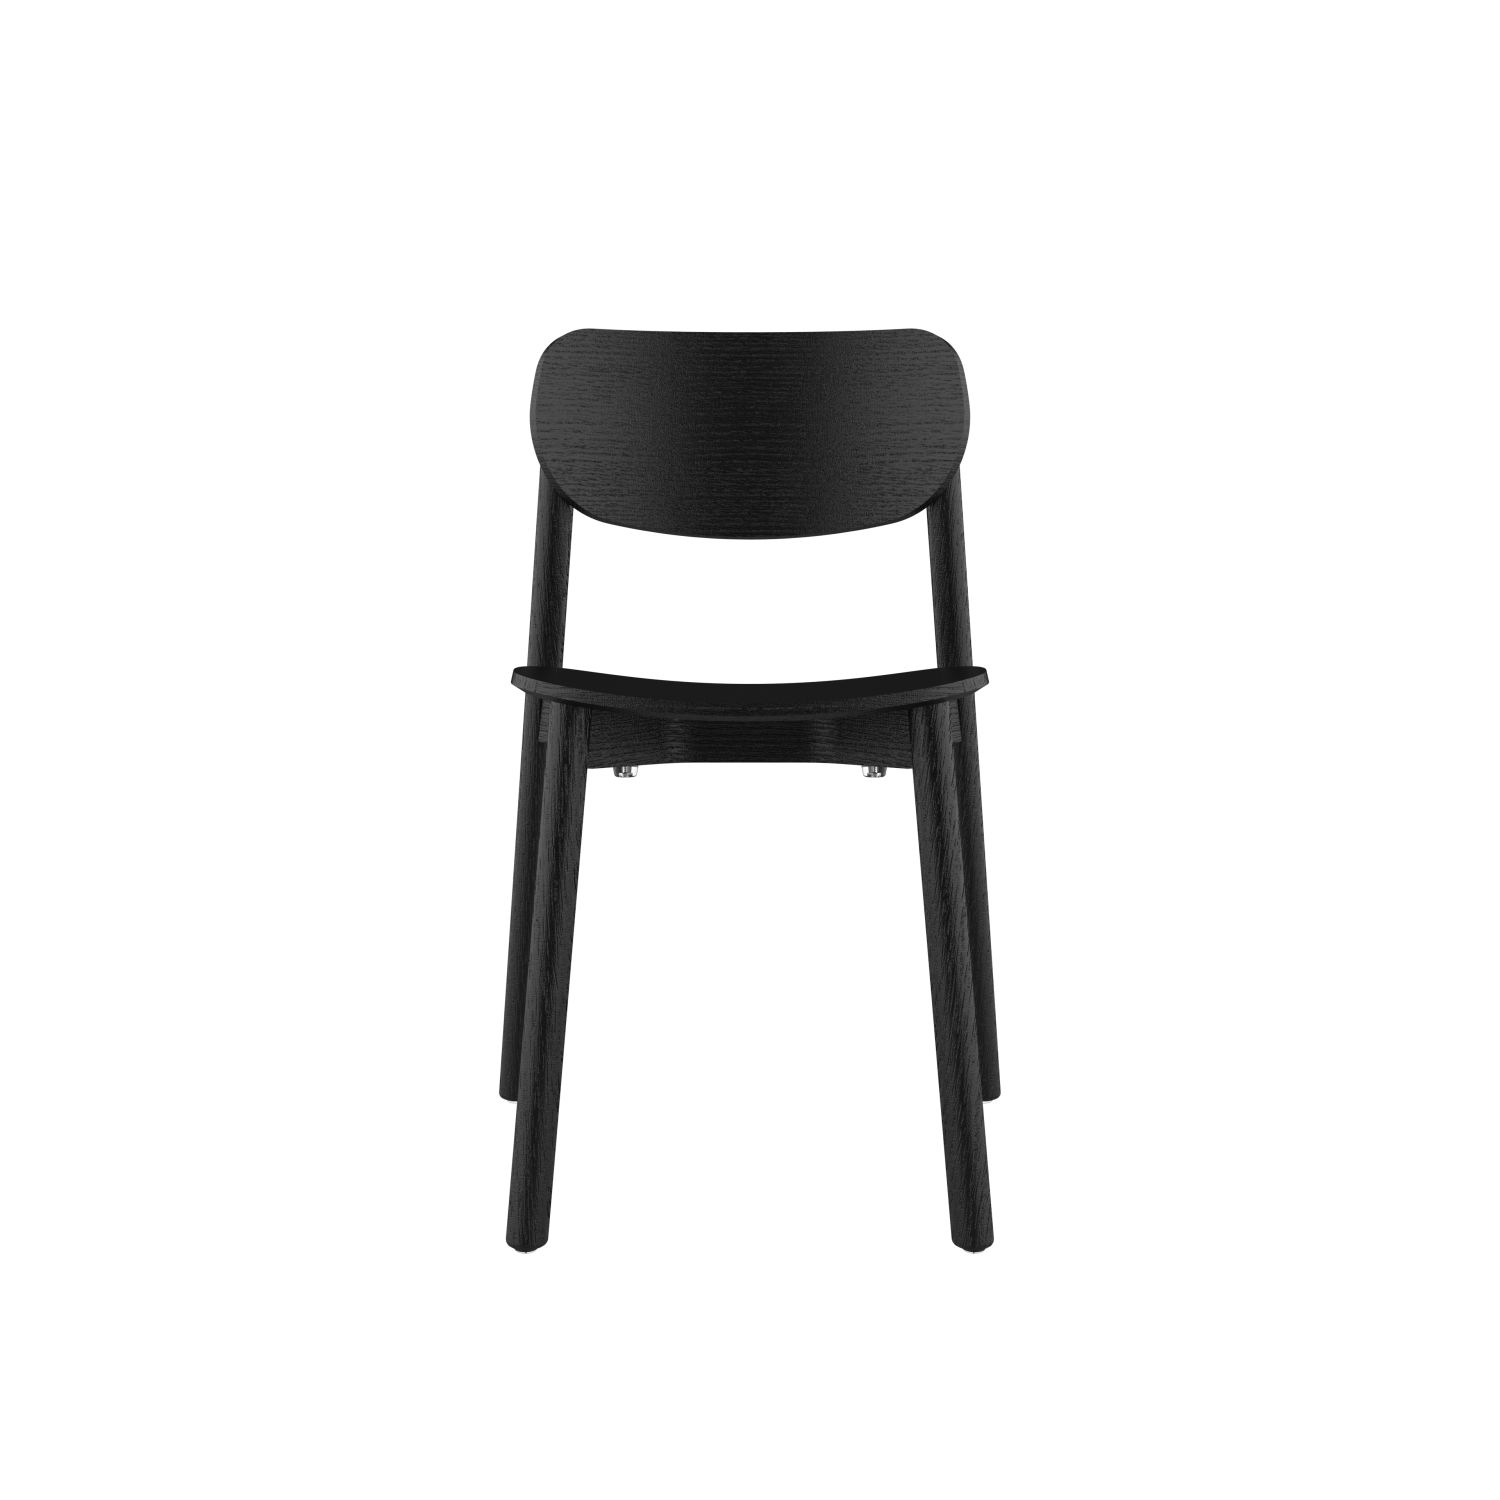 lensvelt studio stefan scholten 2thrd chair stackable no armrests black ral9005 hard leg ends